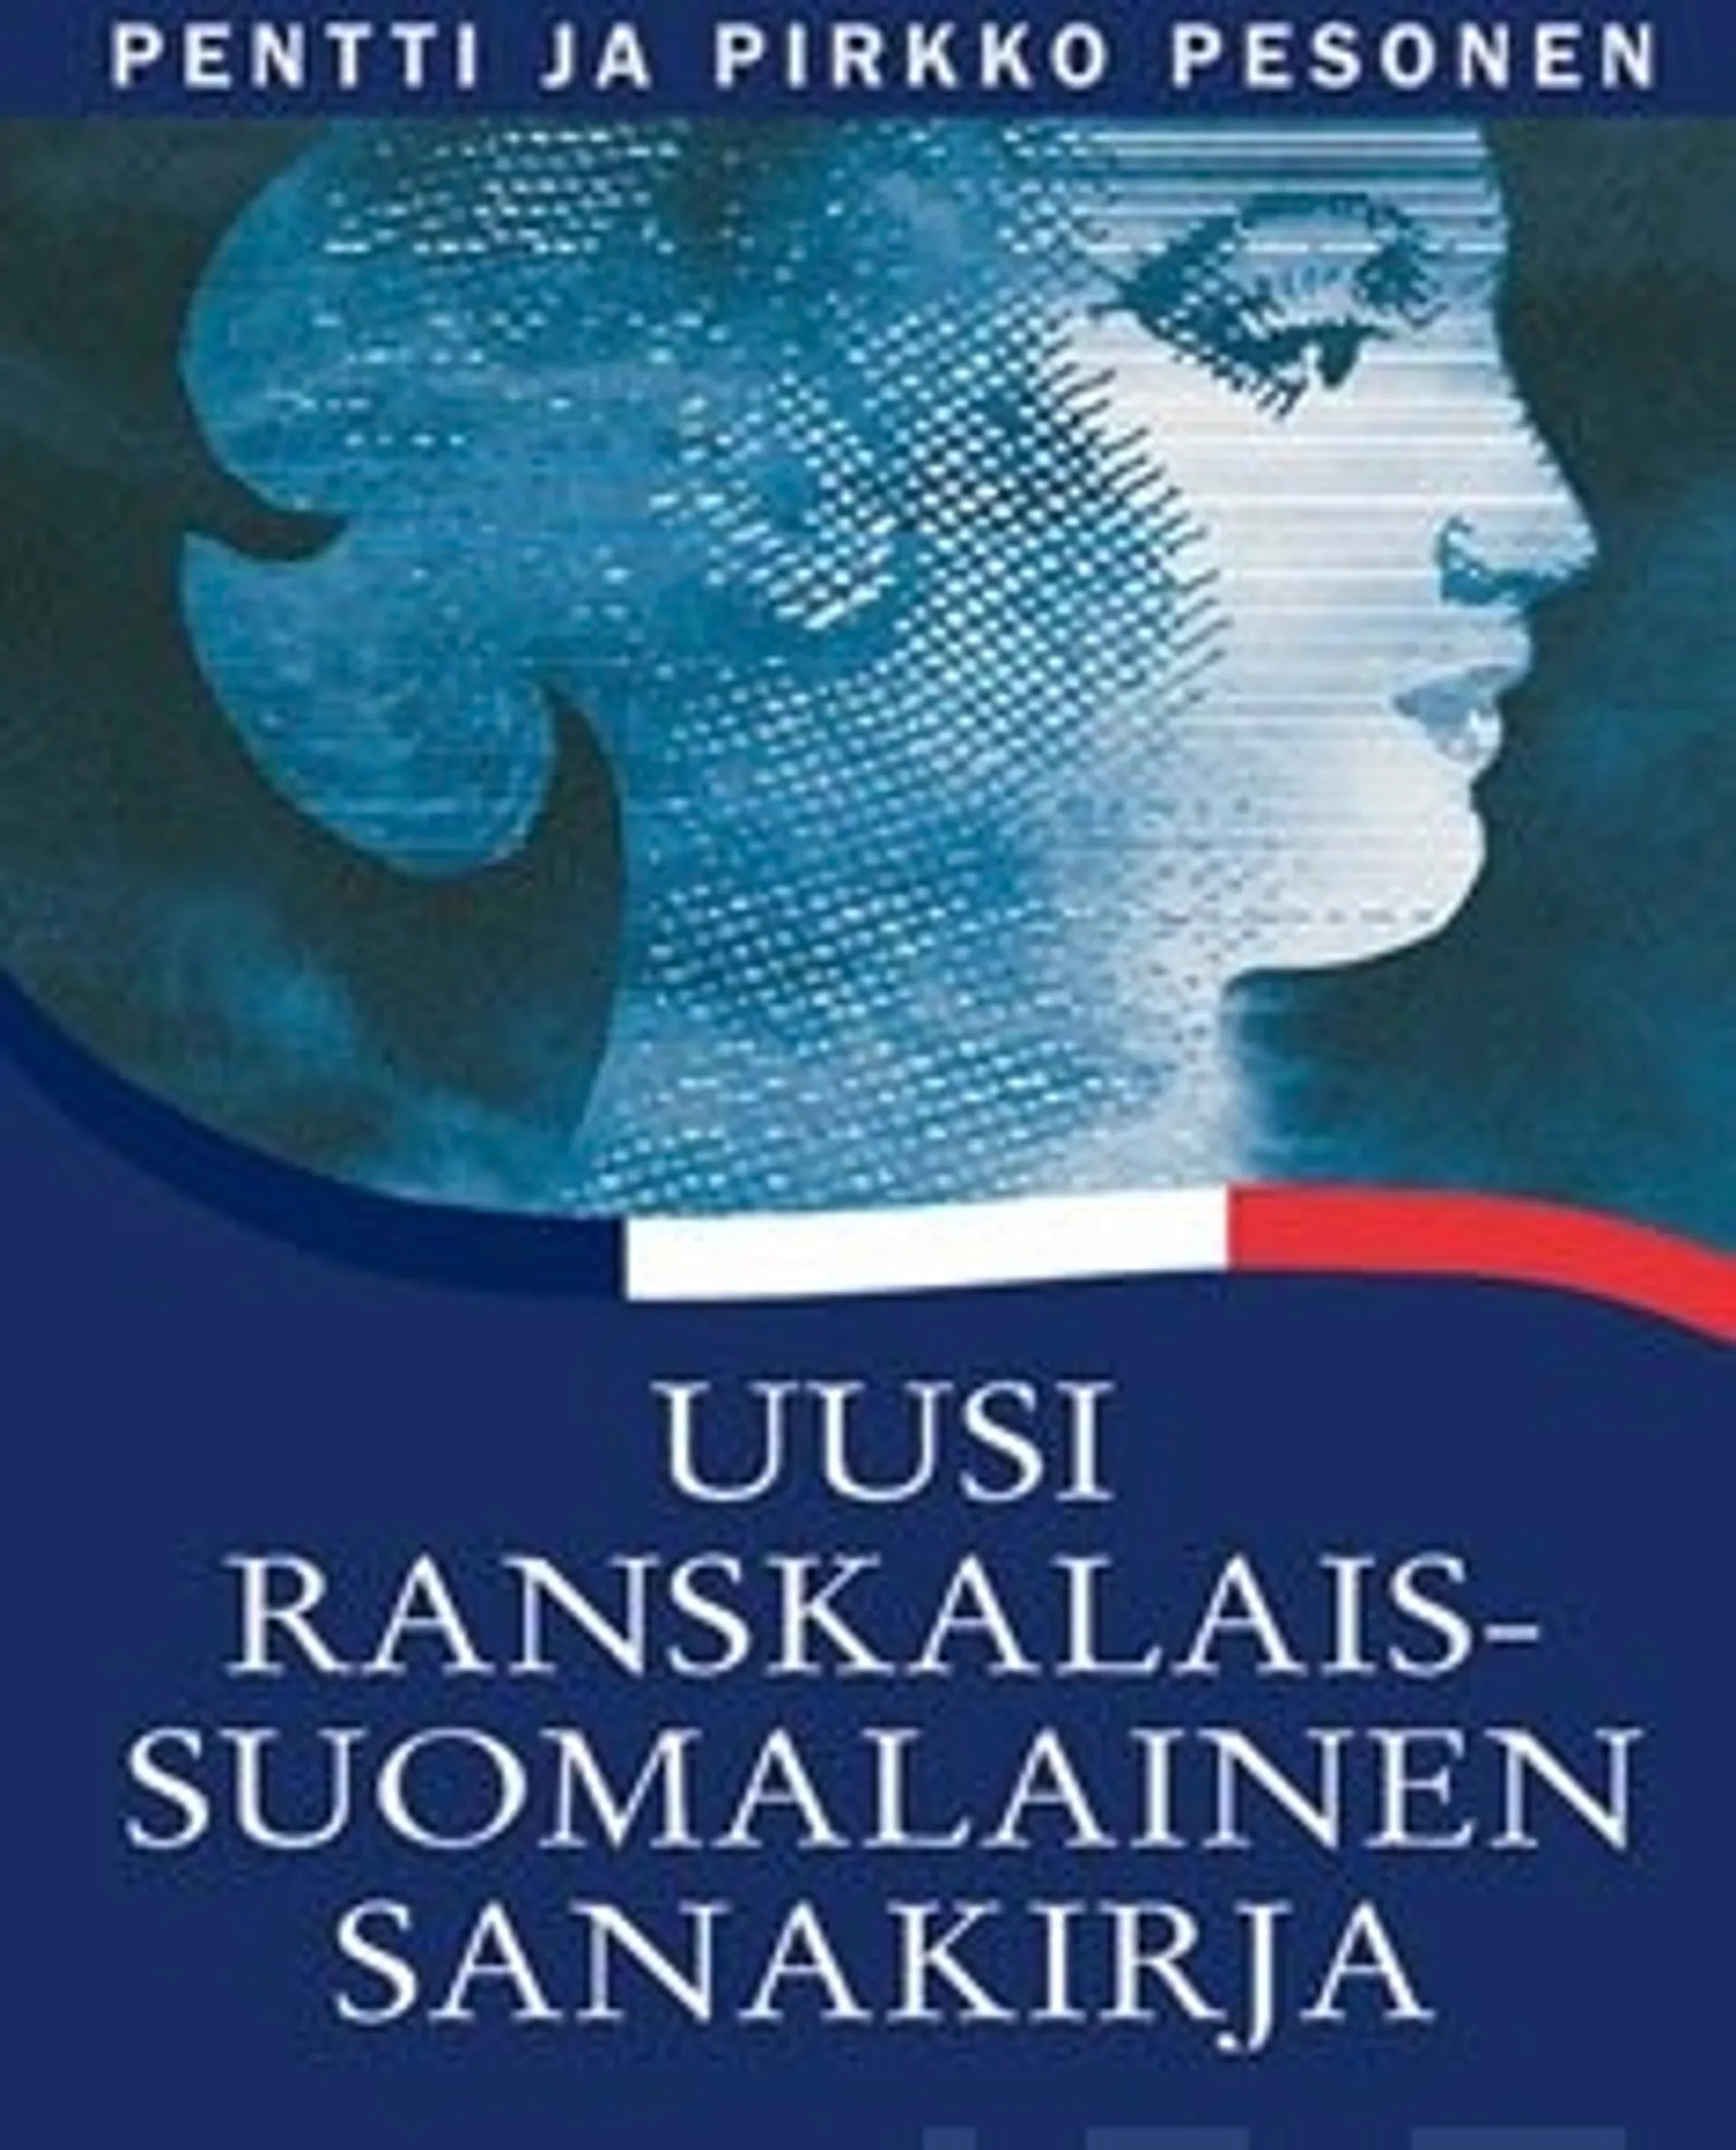 Uusi ranskalais-suomalainen sanakirja